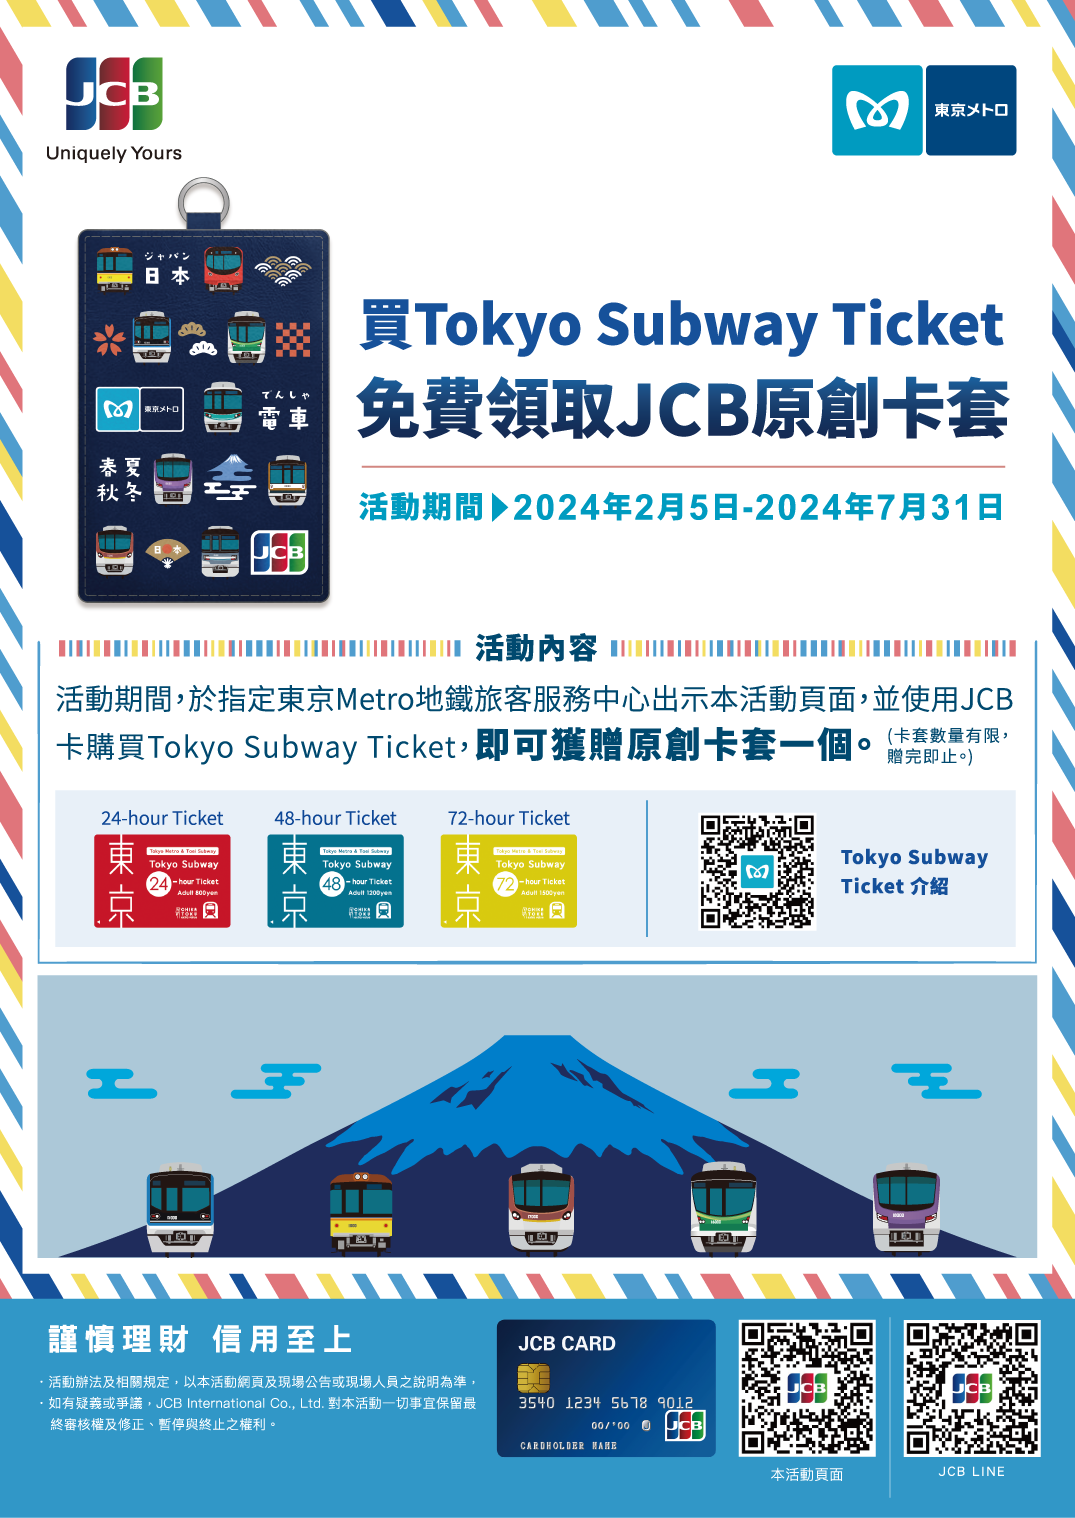 購買Tokyo Subway Ticket 免費領取JCB原創卡套吧！